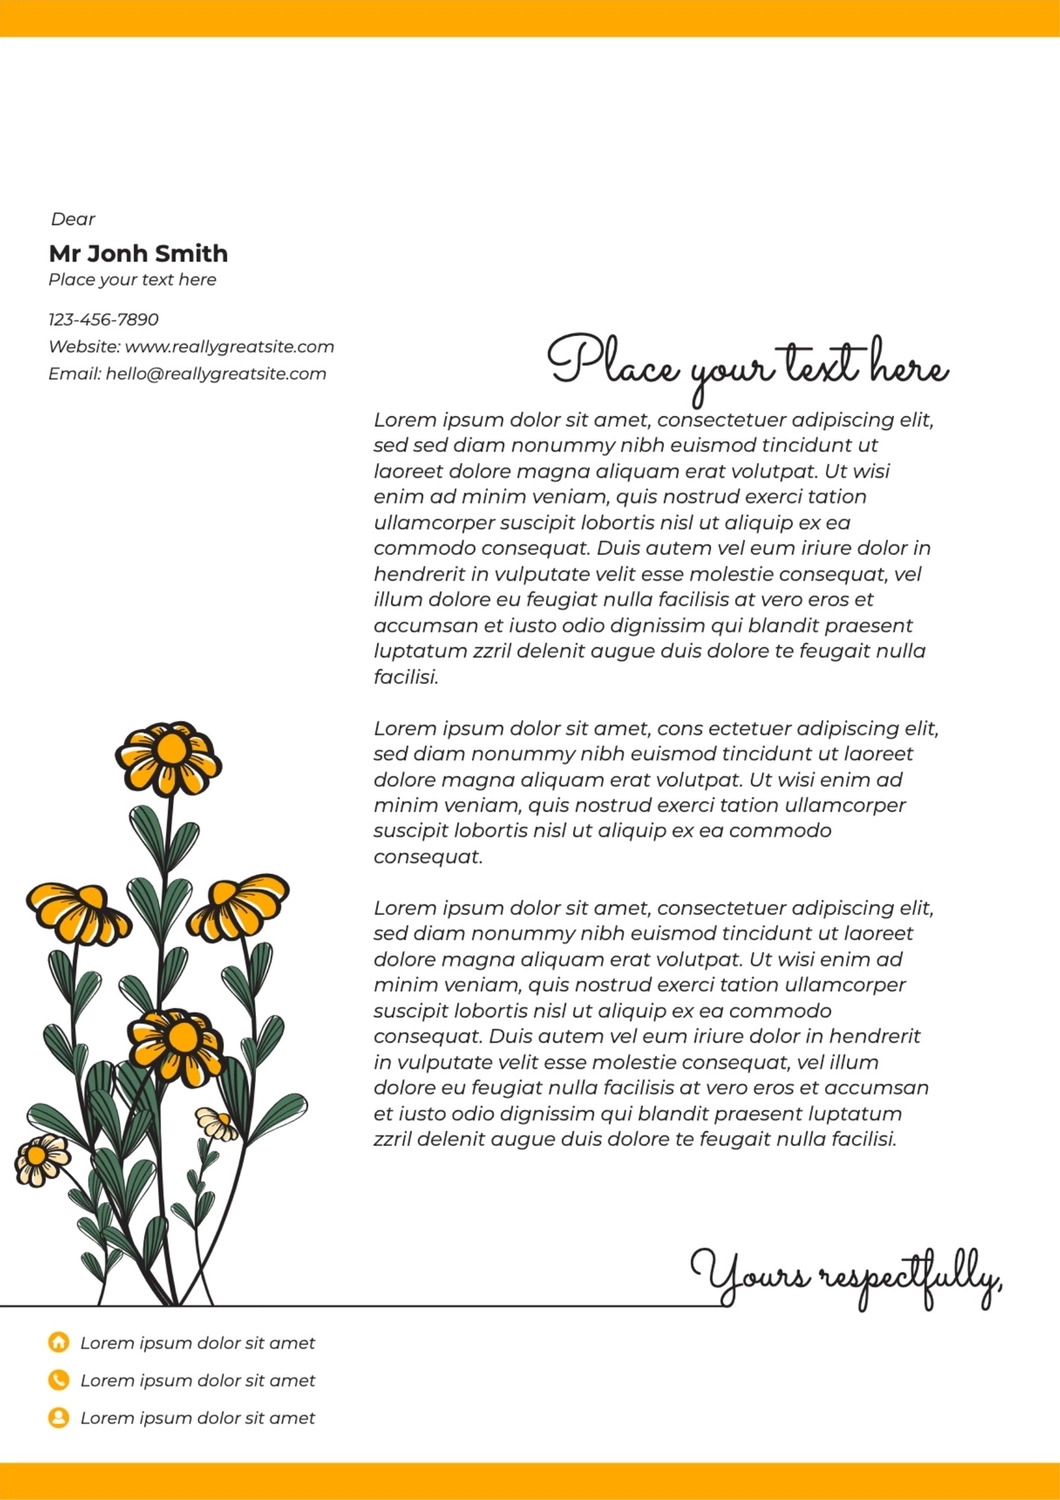 ポップフラワー, Flower, yellow, natural, Letterhead template